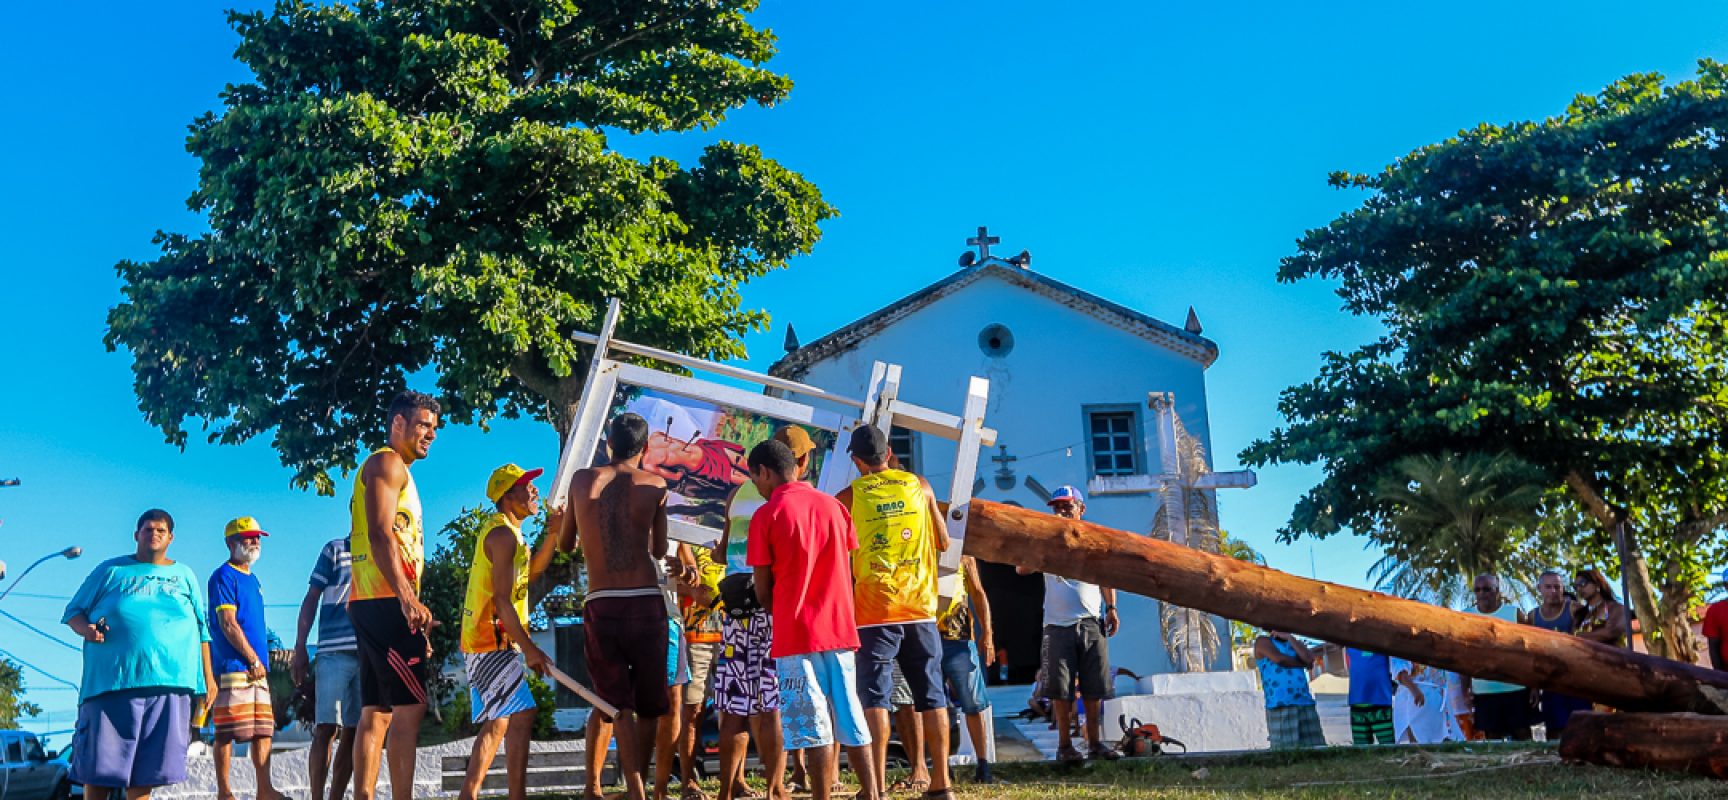 Devoção e fé marcam a festa da Levantada do Mastro em Olivença